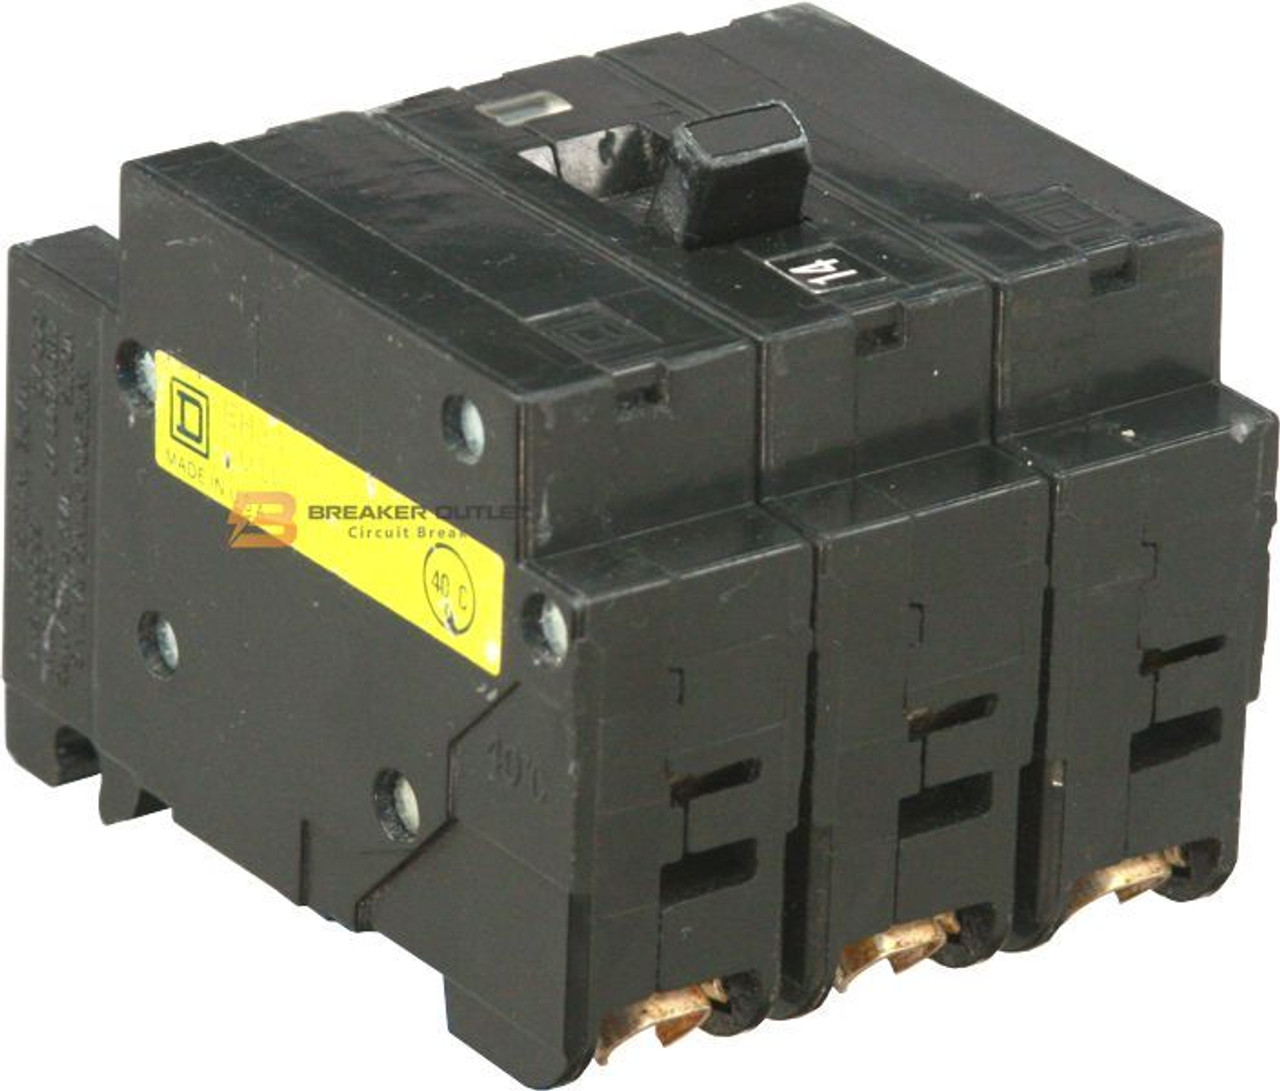 EH34070 Obsolete Circuit Breakers